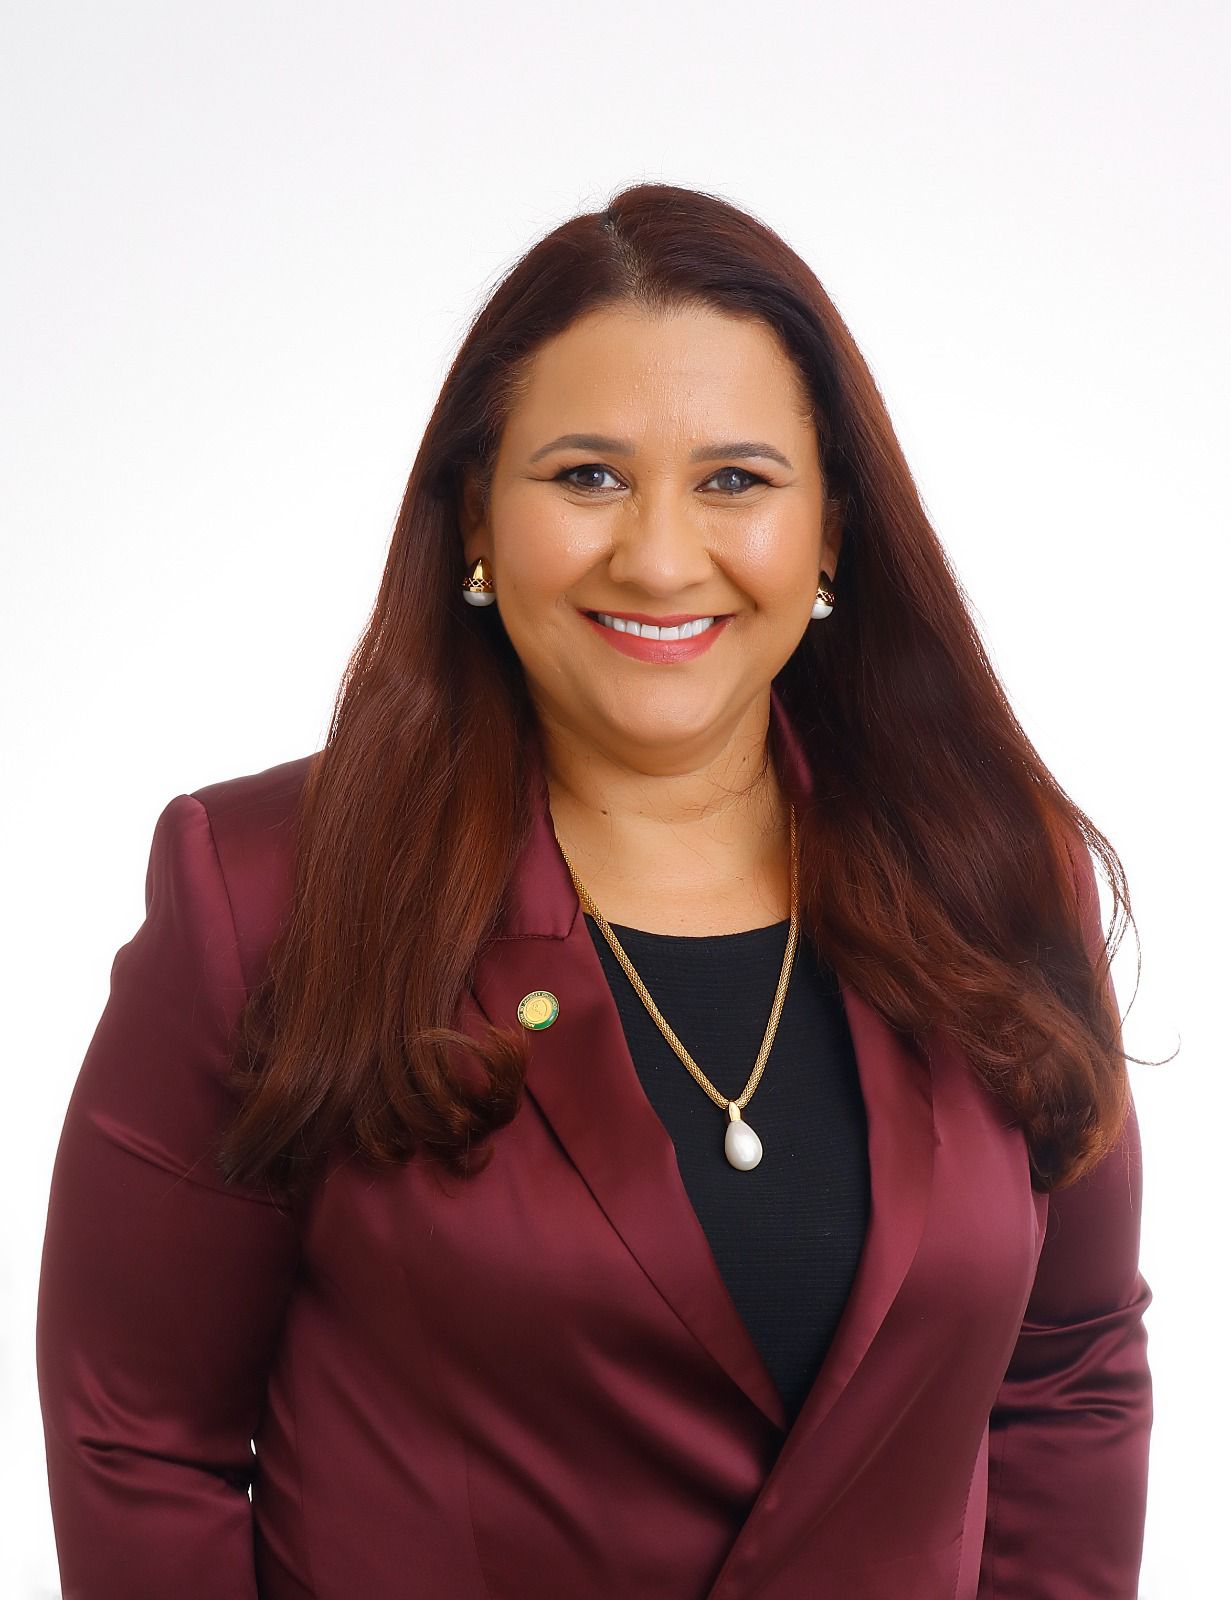 Dr. Ana Ellen de Queiroz Santiago